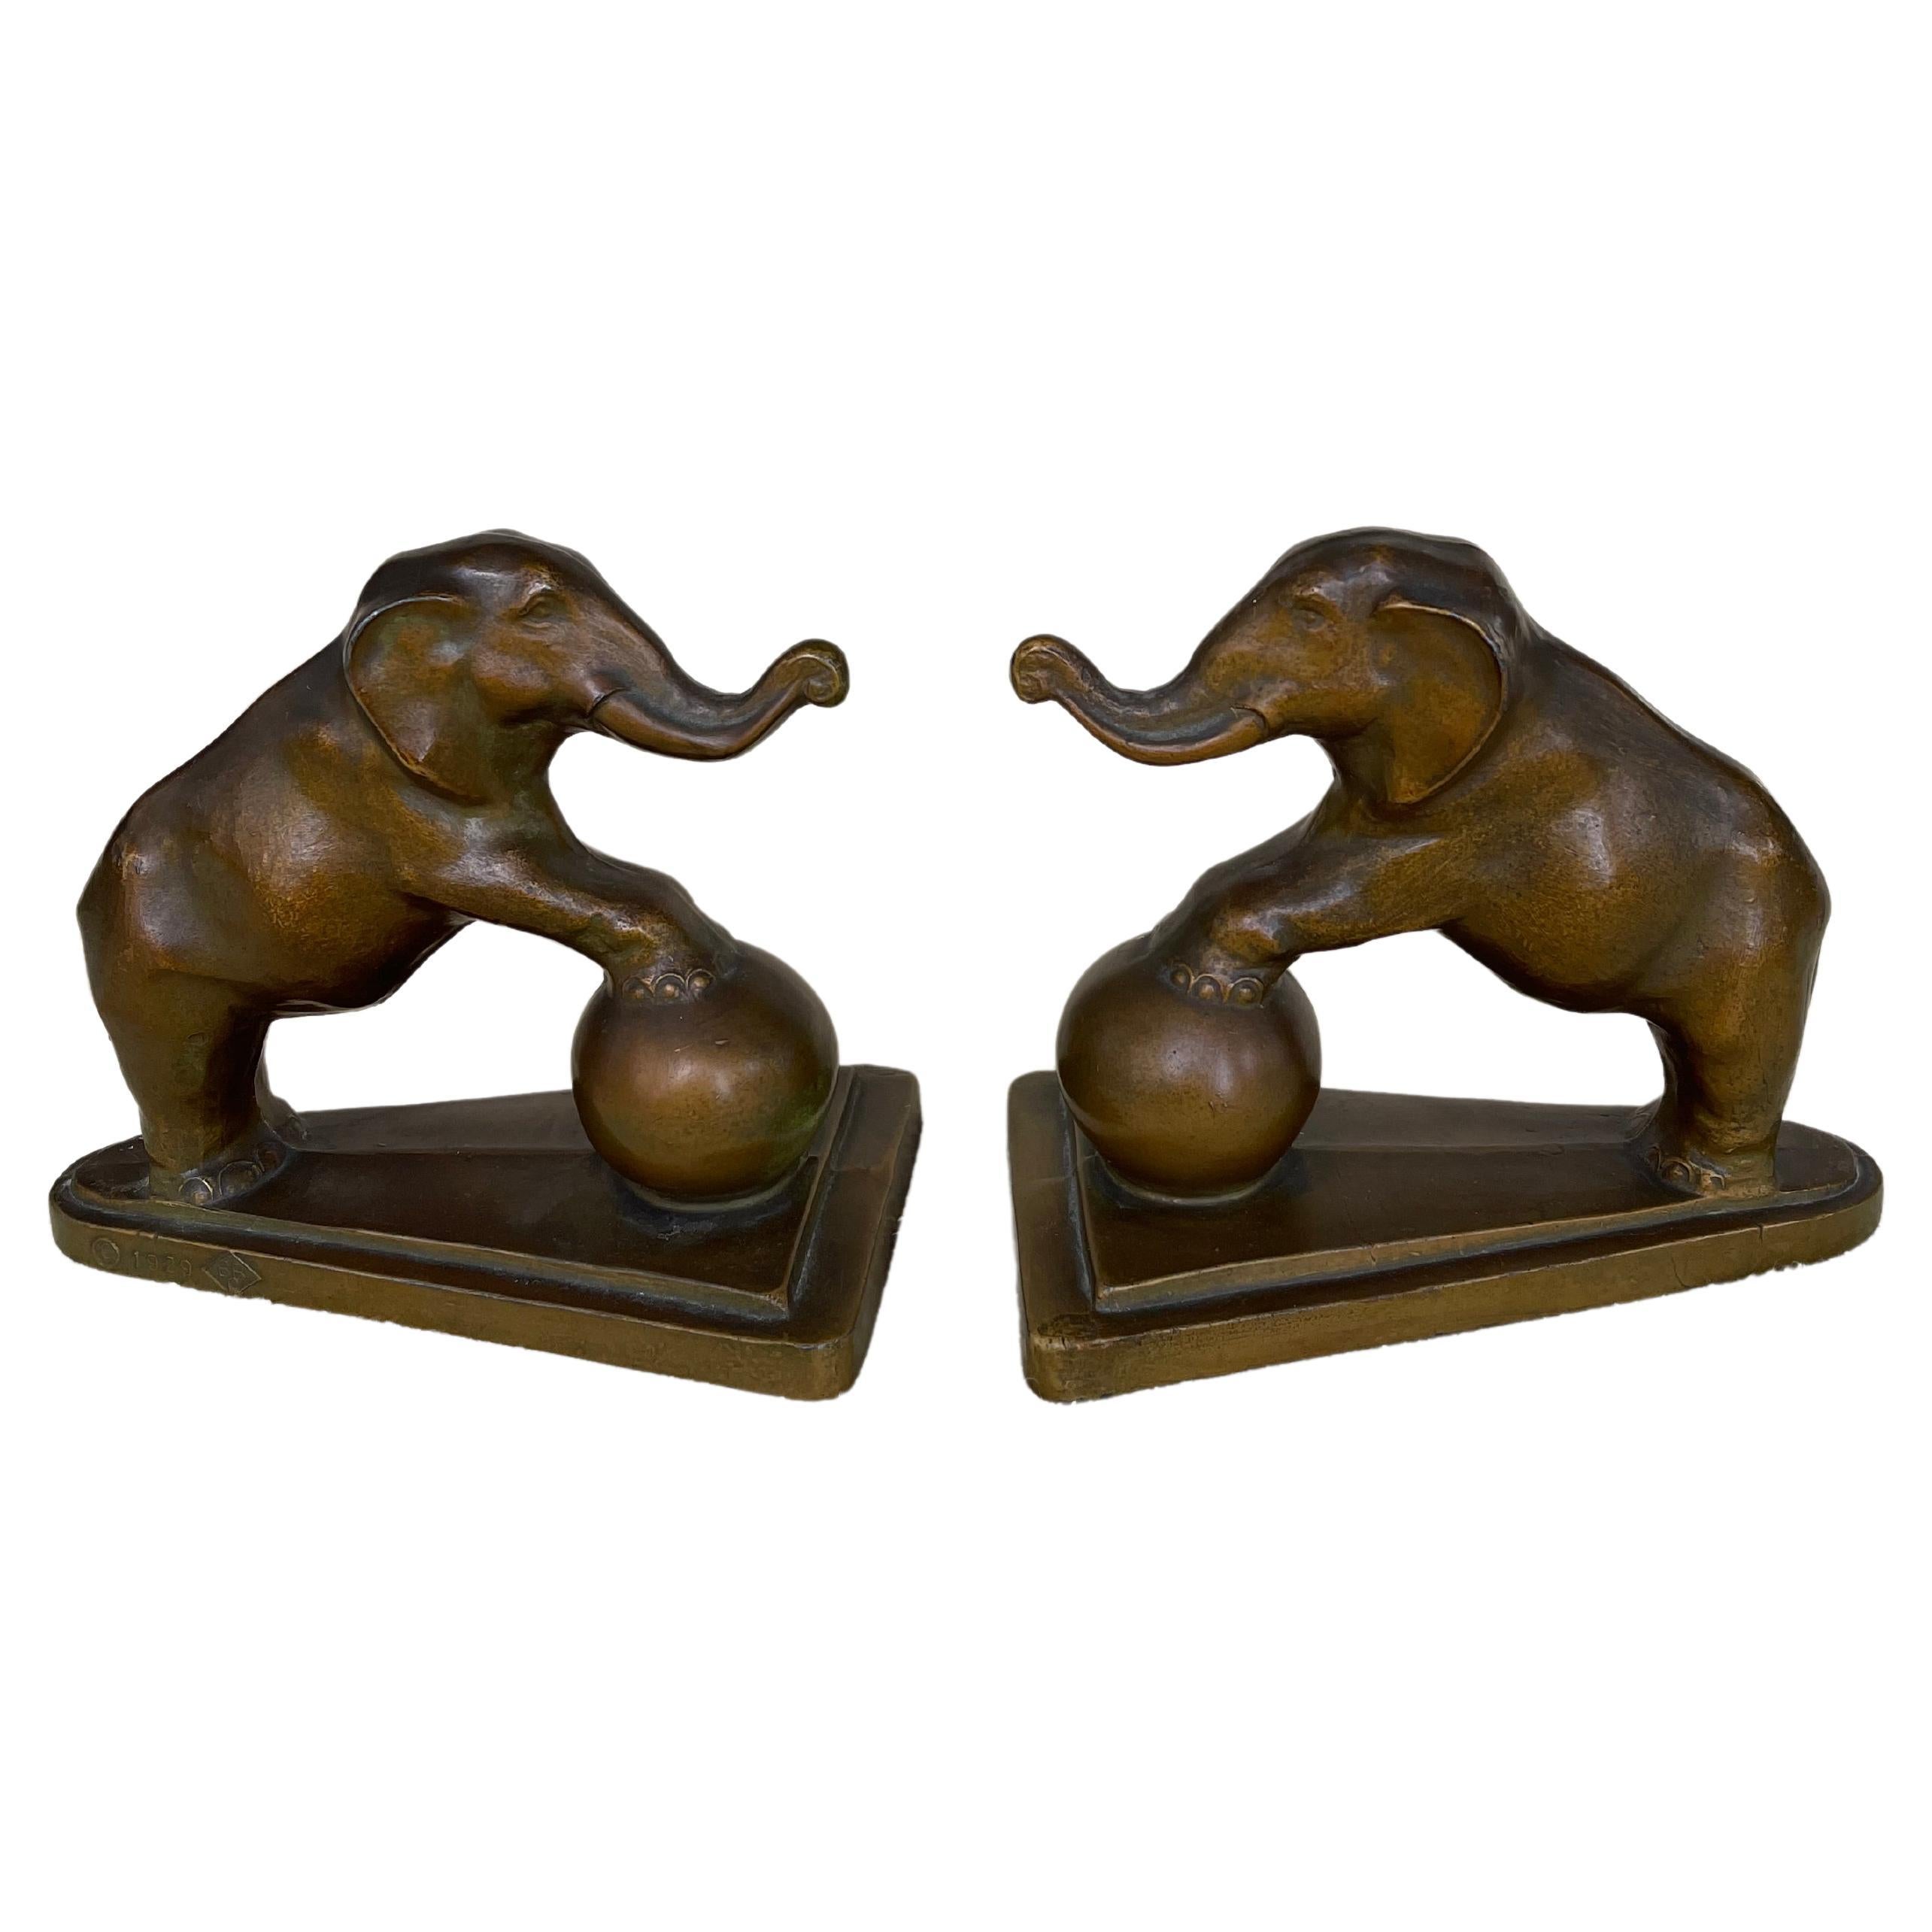 Paire de serre-livres en forme d'éléphant, signés et datés 1929